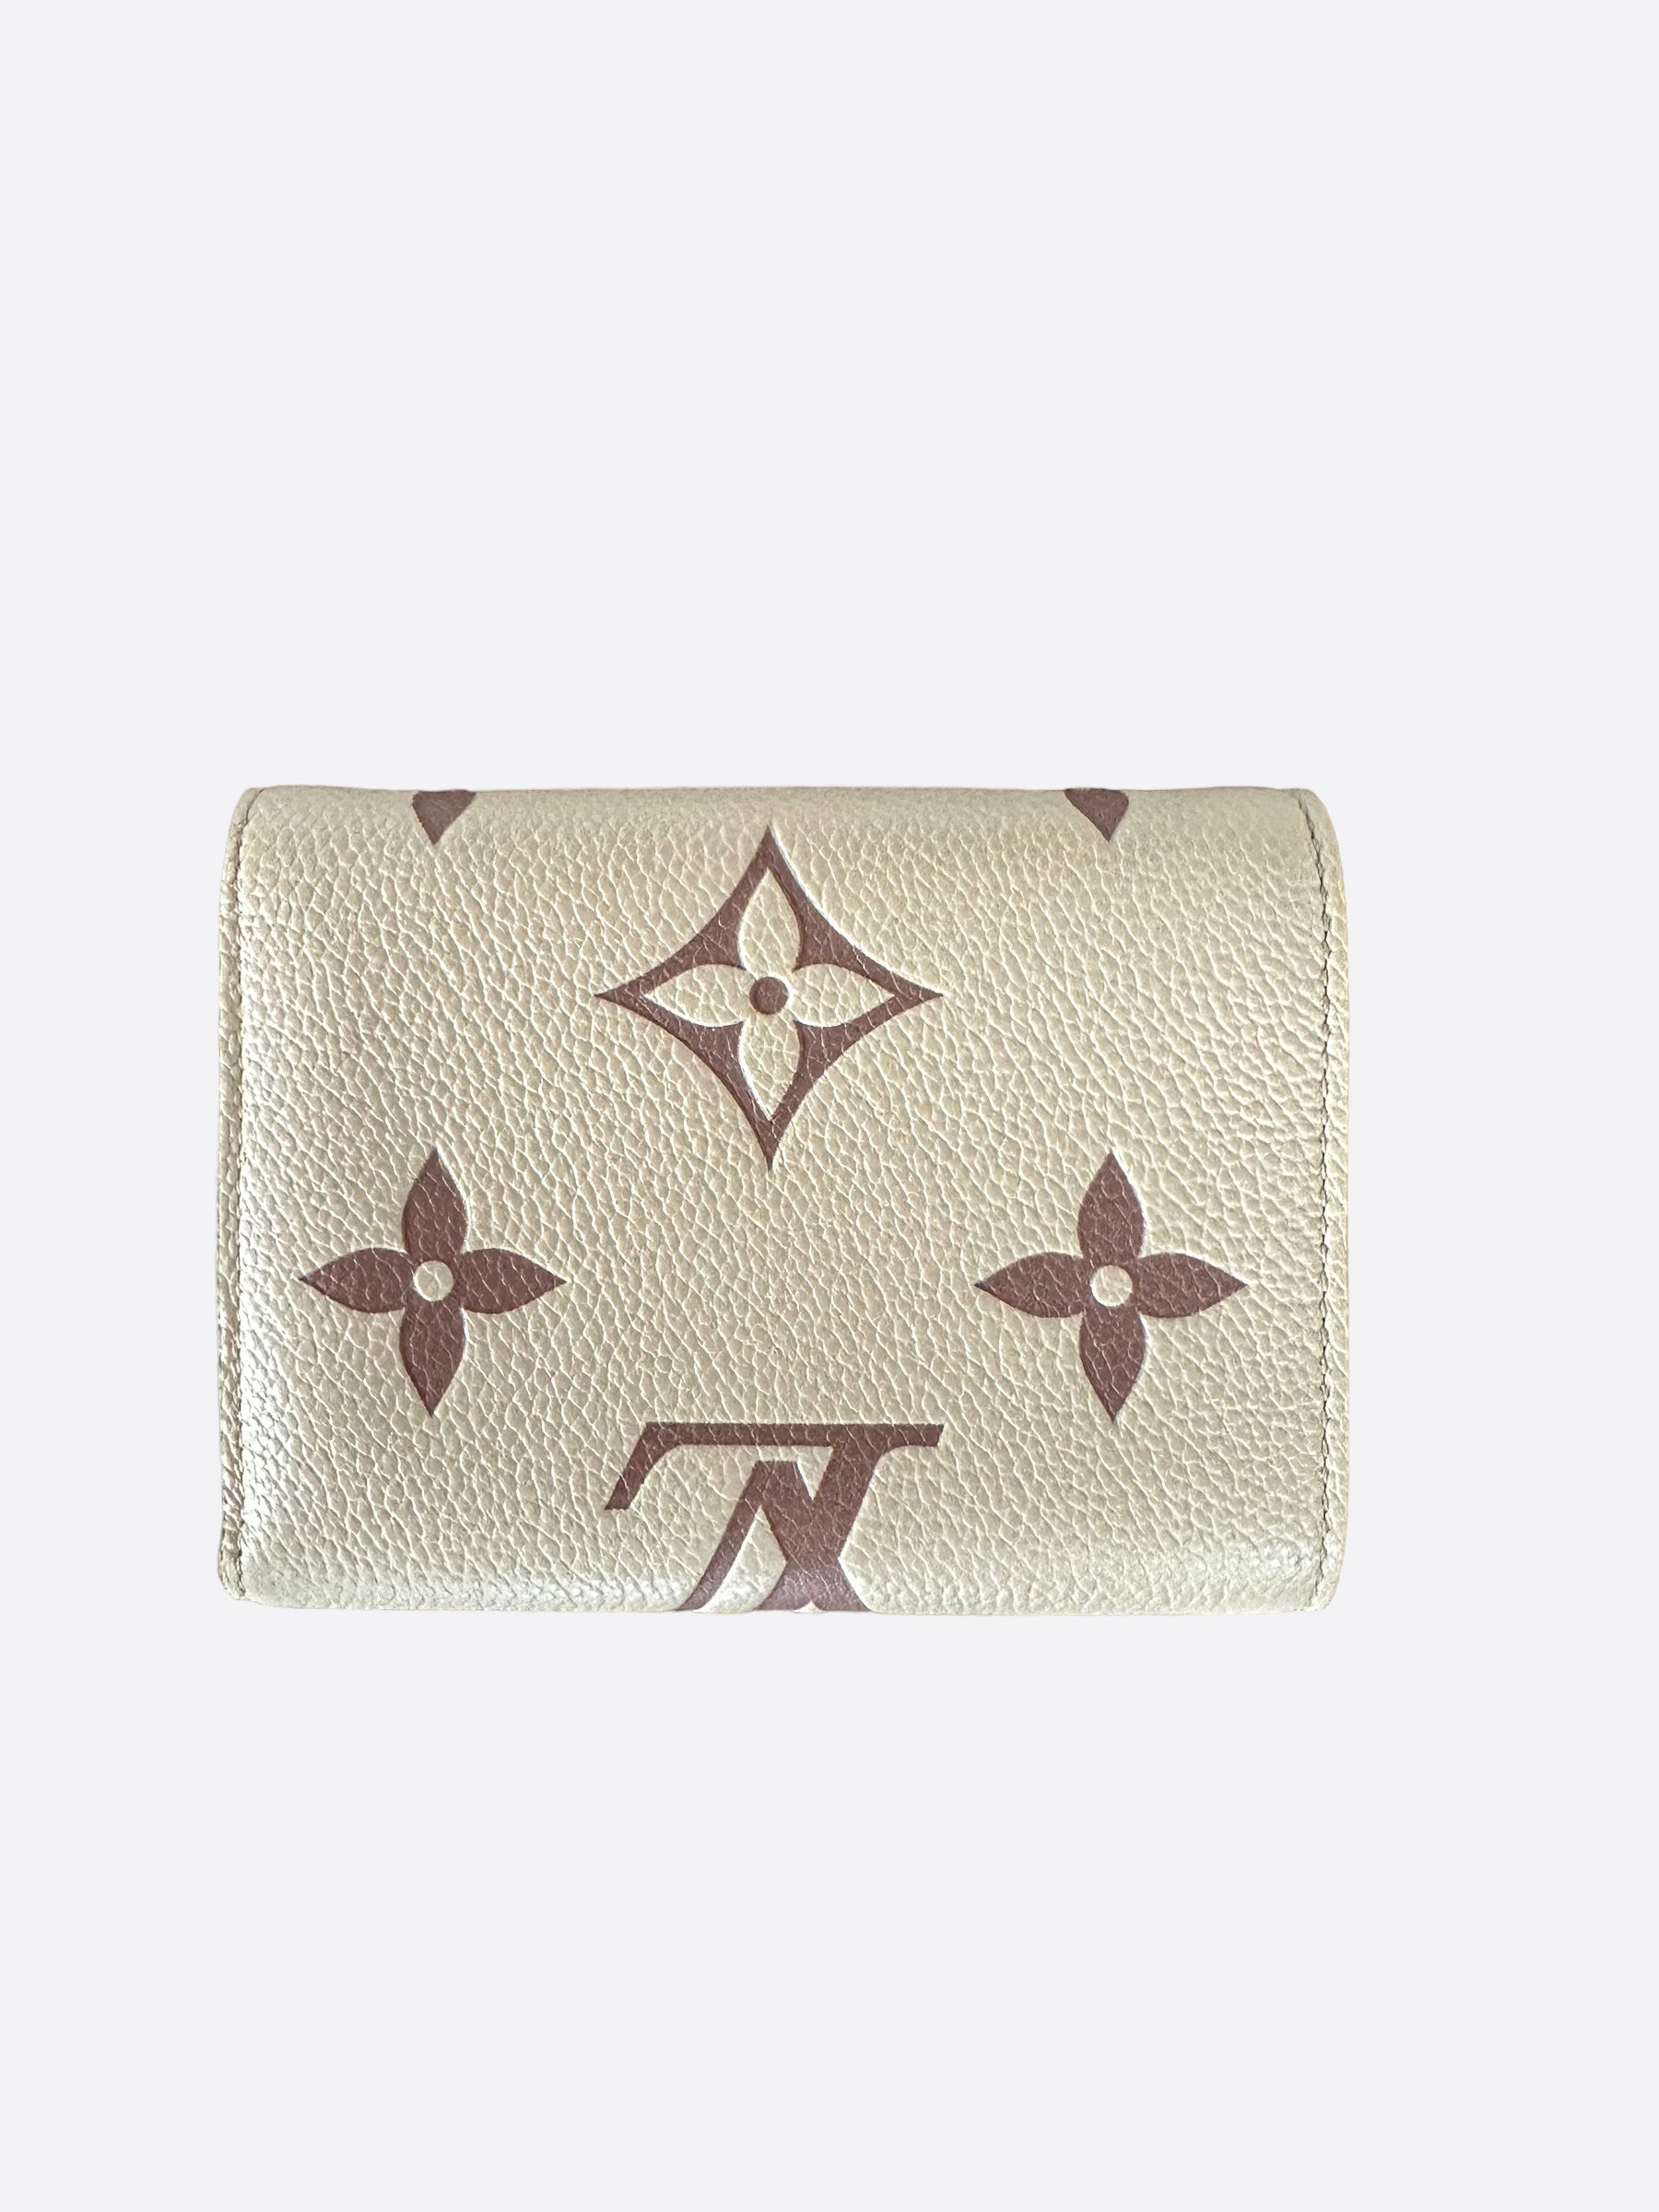 Louis Vuitton Monogram Victorine Wallet, Brown, One Size